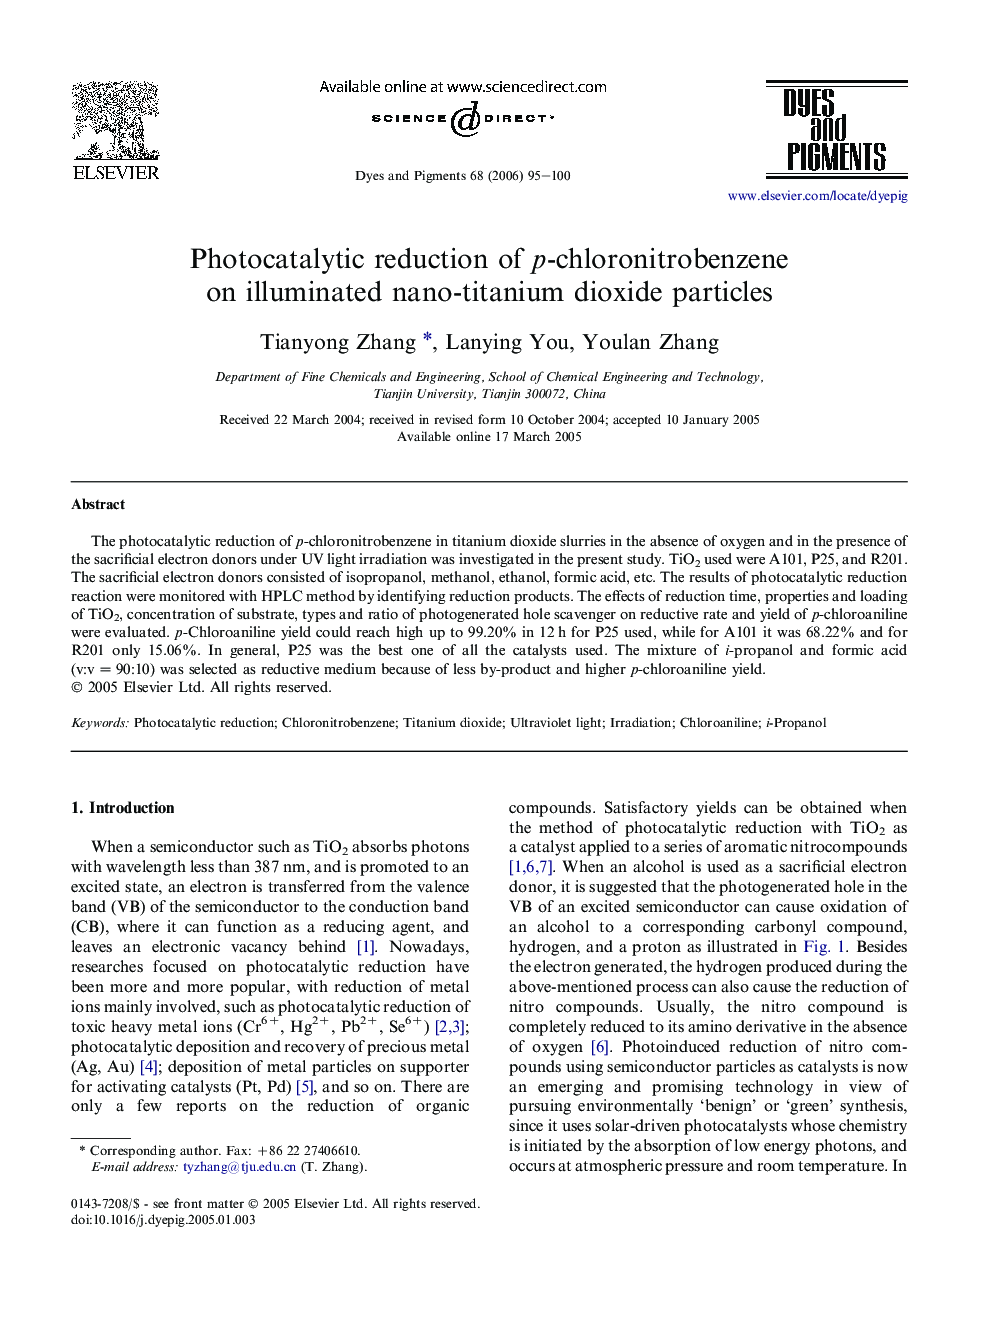 Photocatalytic reduction of p-chloronitrobenzene on illuminated nano-titanium dioxide particles